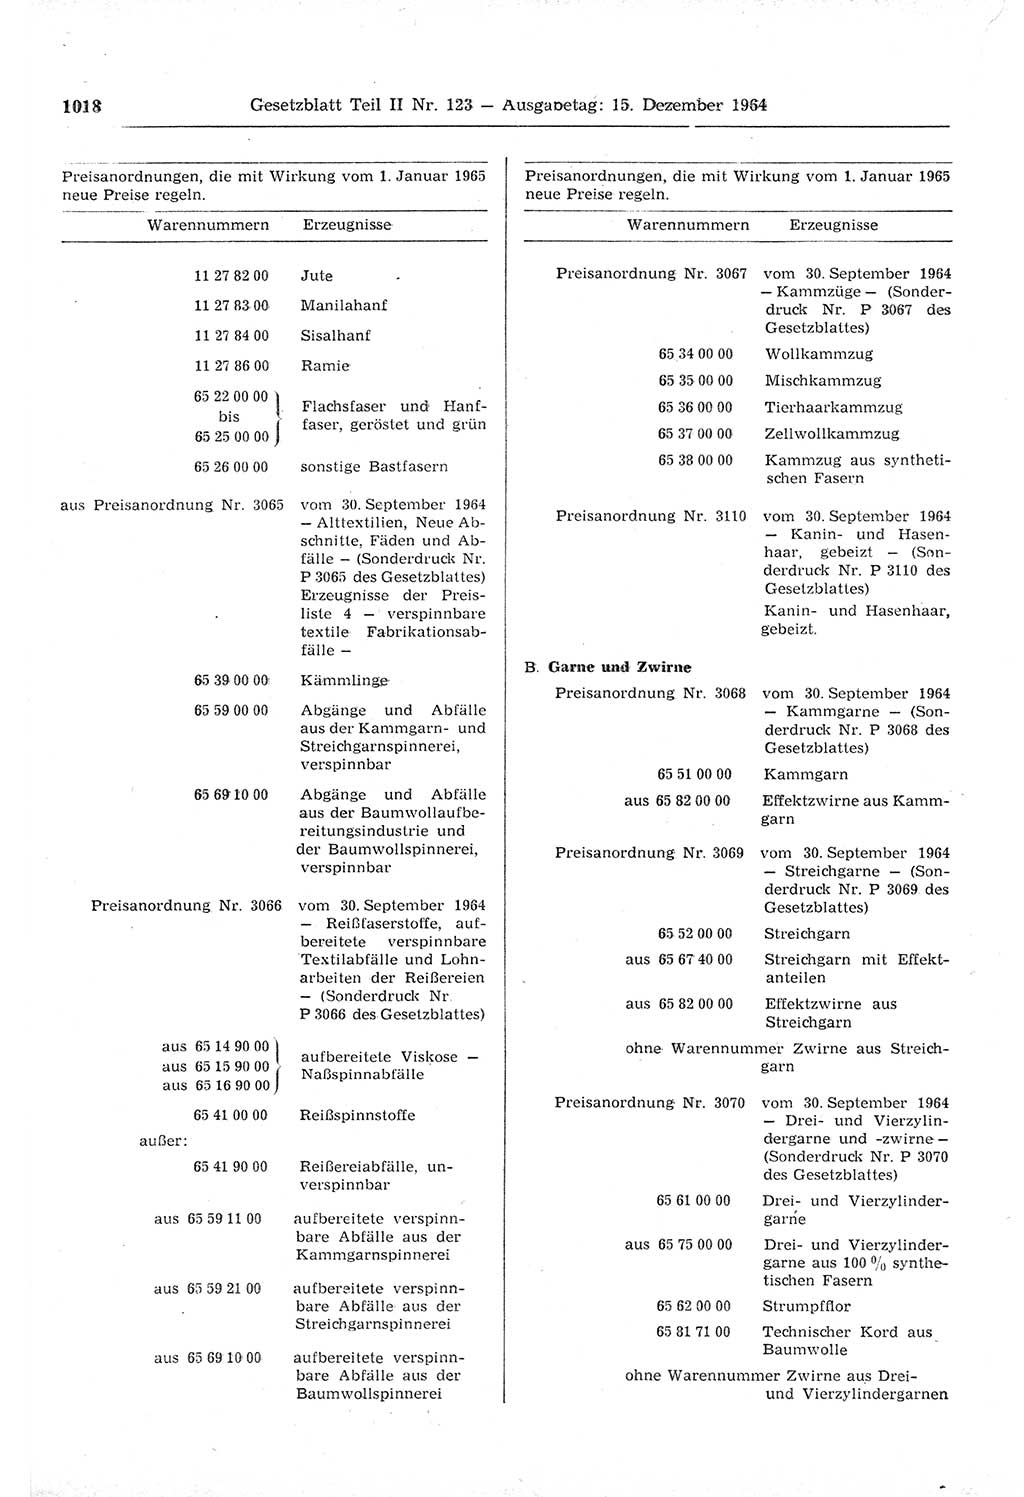 Gesetzblatt (GBl.) der Deutschen Demokratischen Republik (DDR) Teil ⅠⅠ 1964, Seite 1018 (GBl. DDR ⅠⅠ 1964, S. 1018)